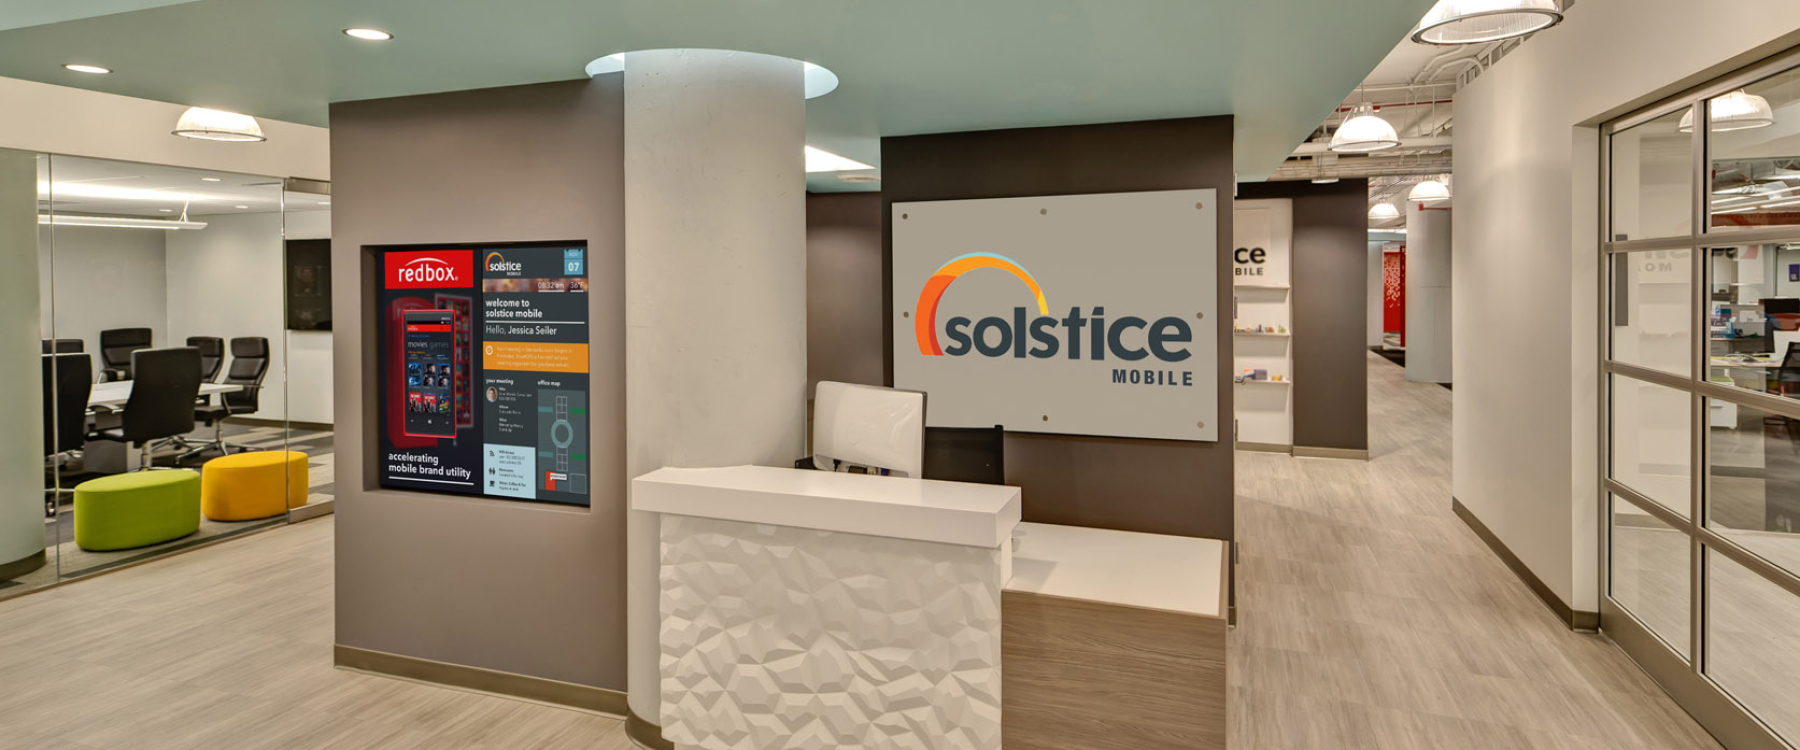 Solstice01 Reception